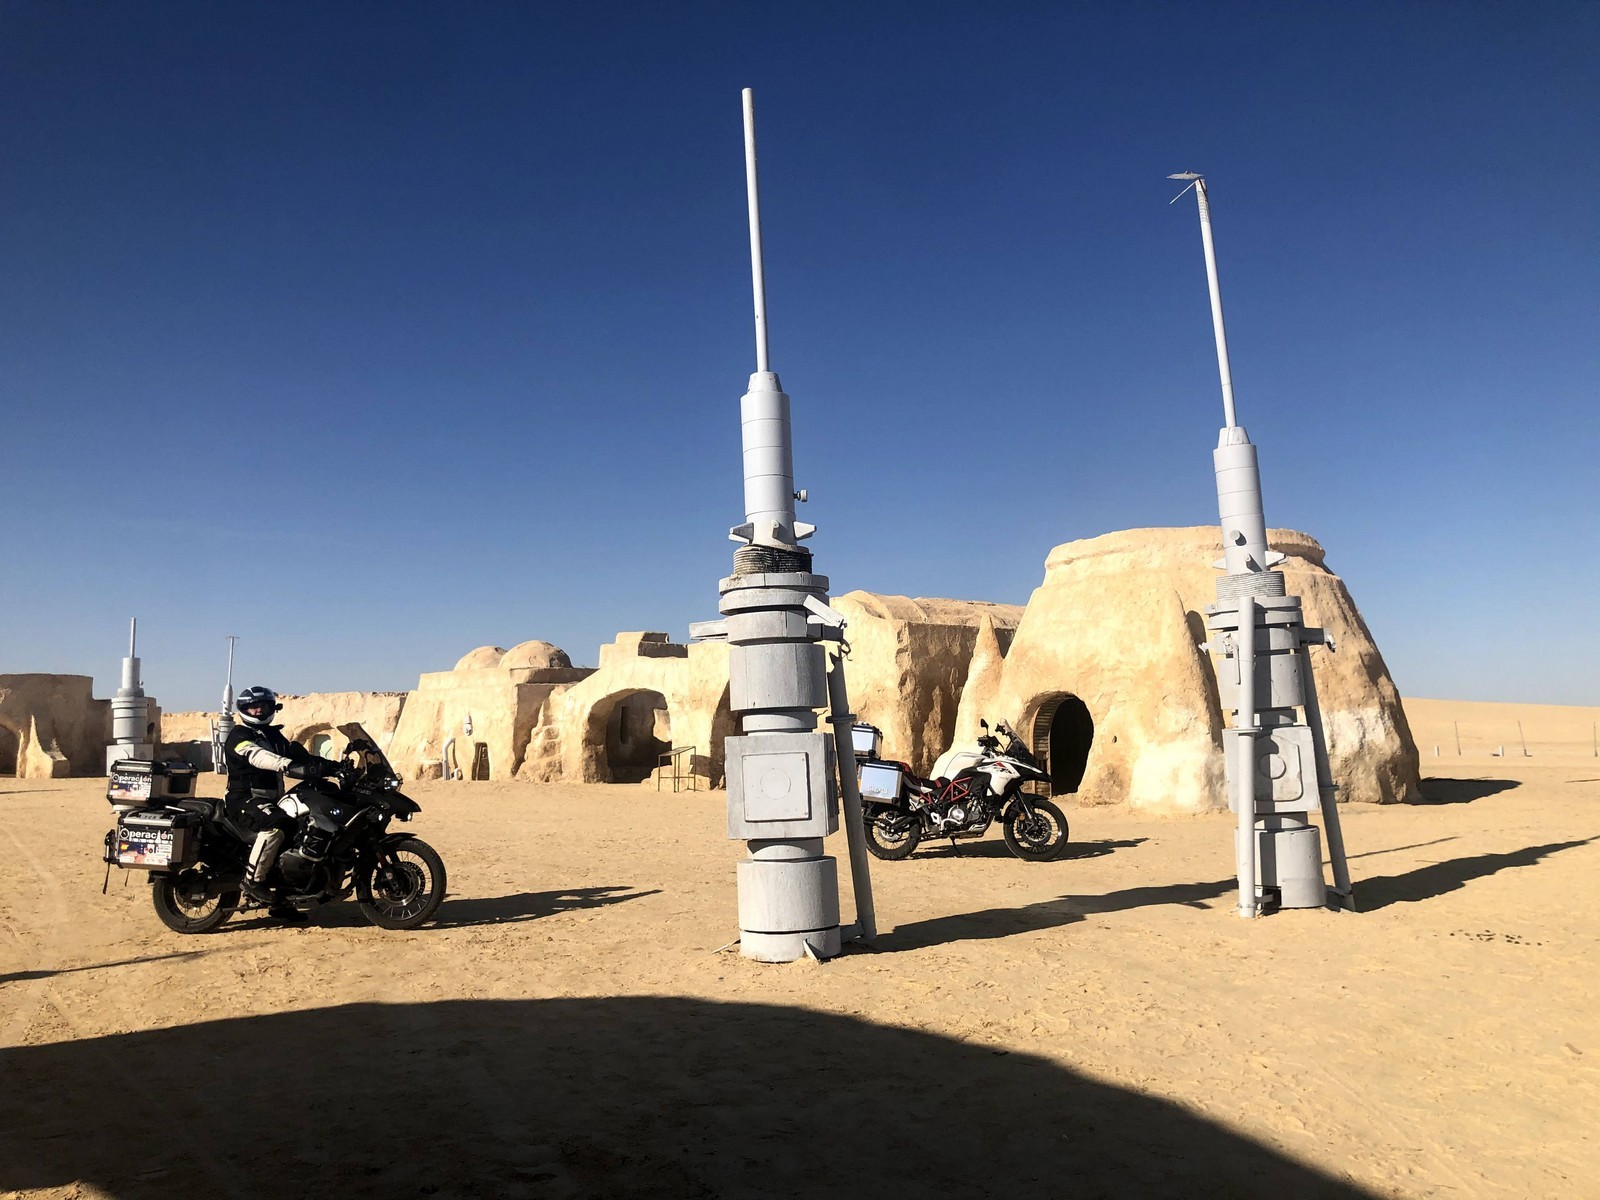 Mos Spa, conocida como Tatooine en Star Wars.